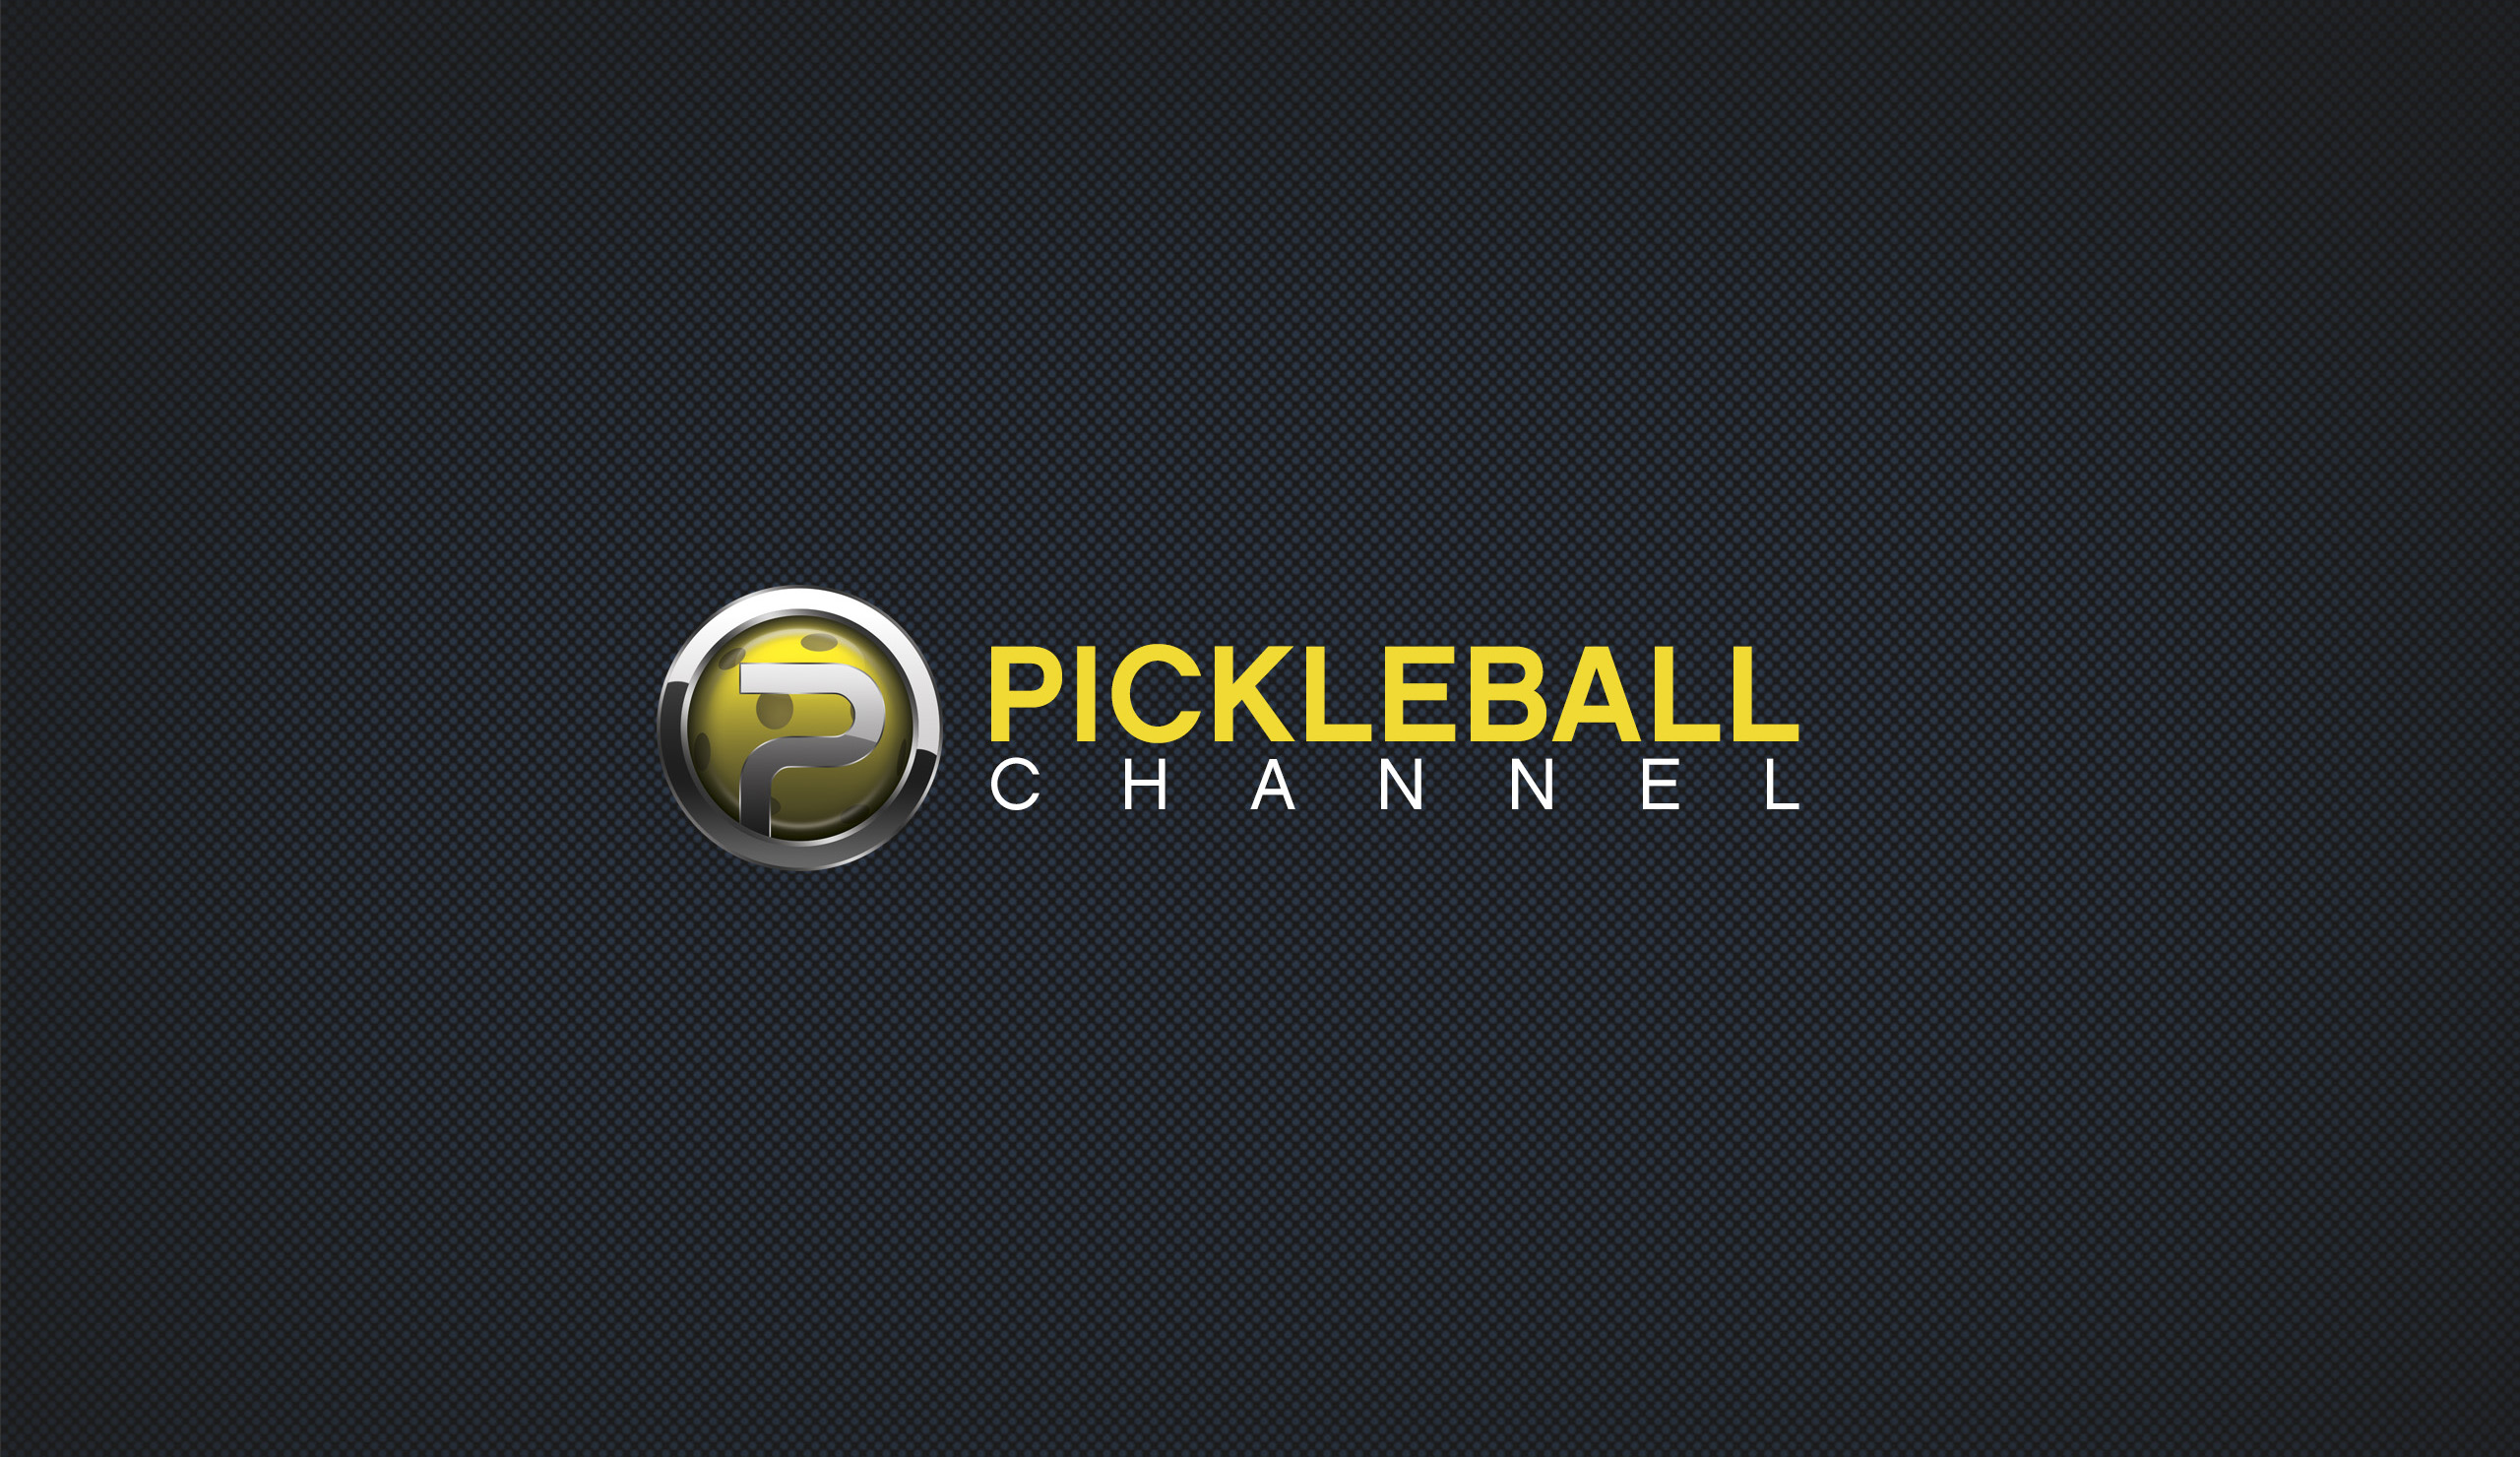 (c) Pickleballchannel.com